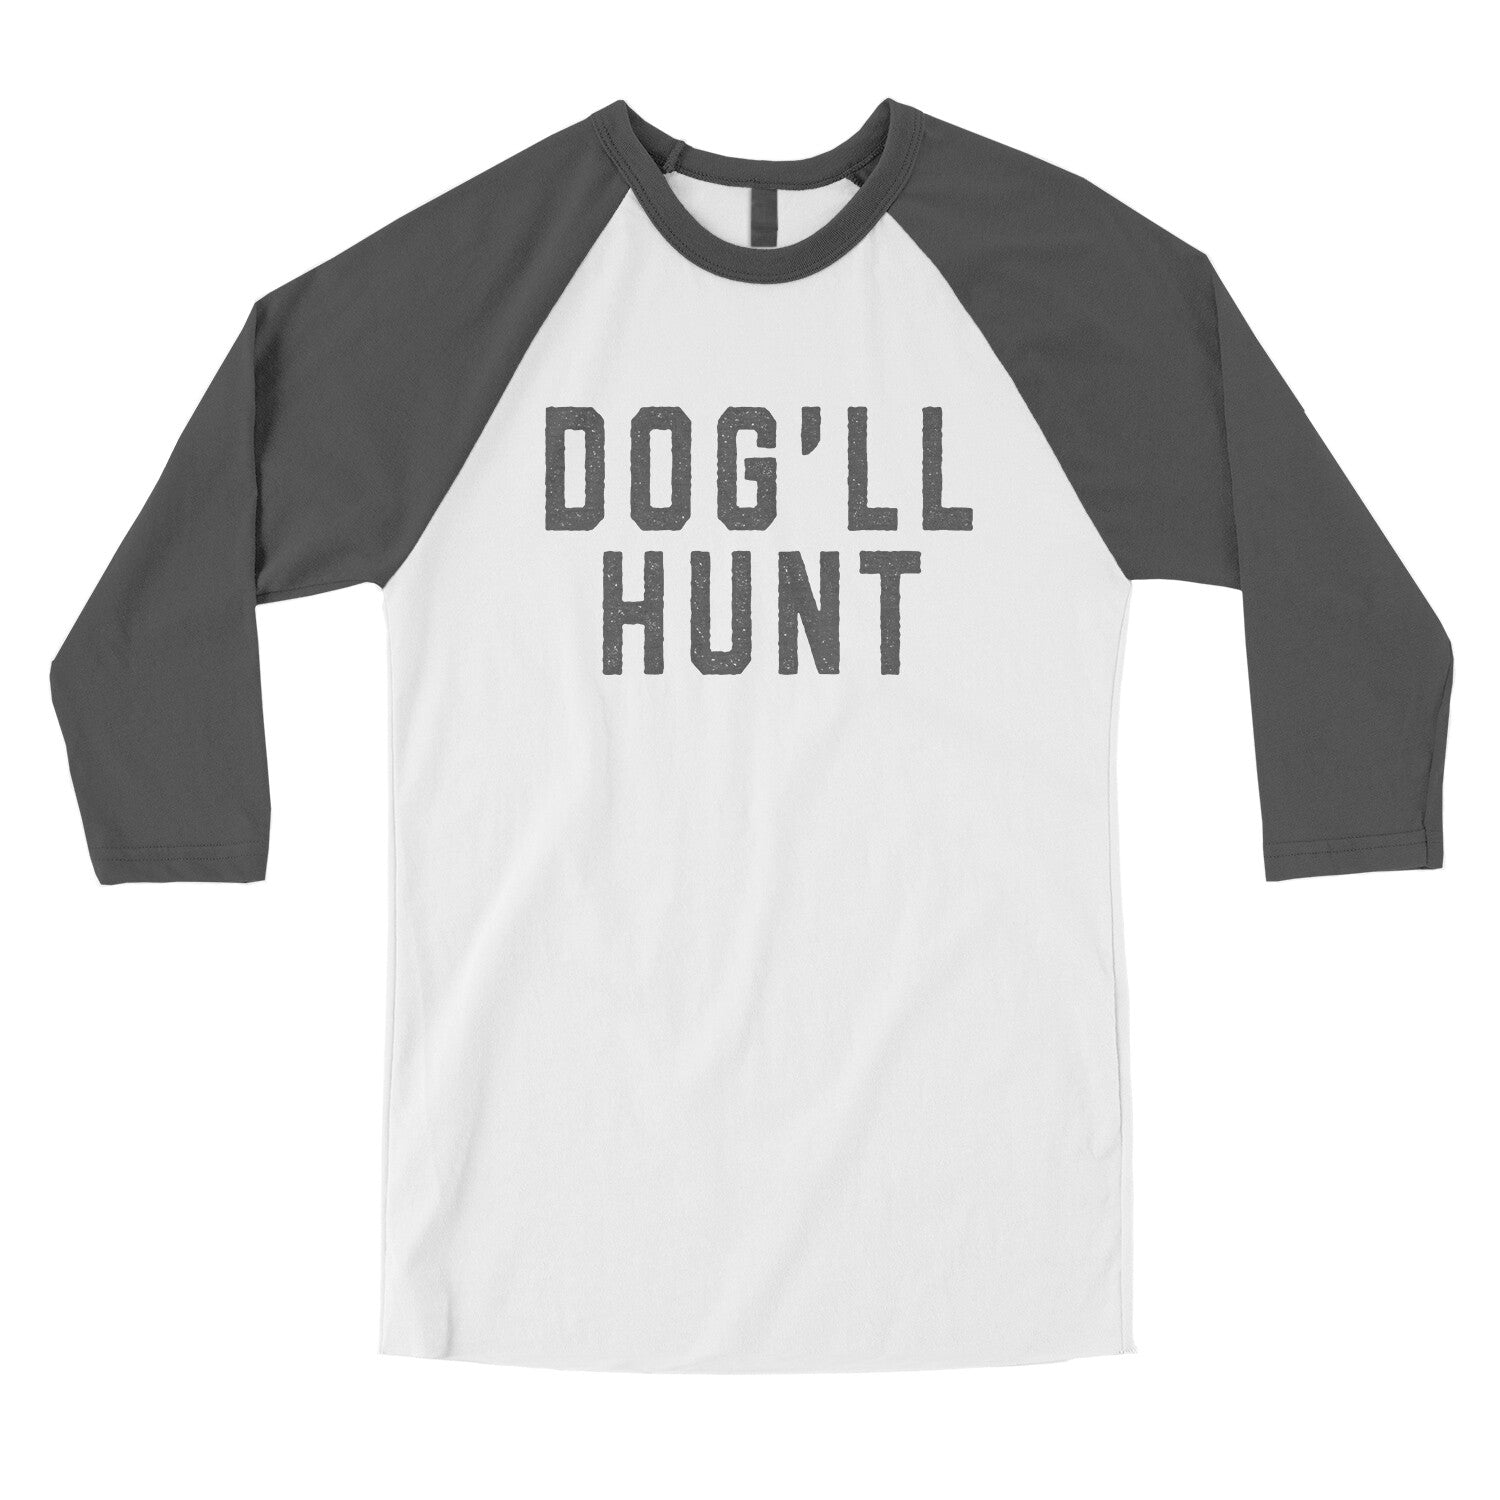 Dog’ll Hunt in White with Asphalt Color